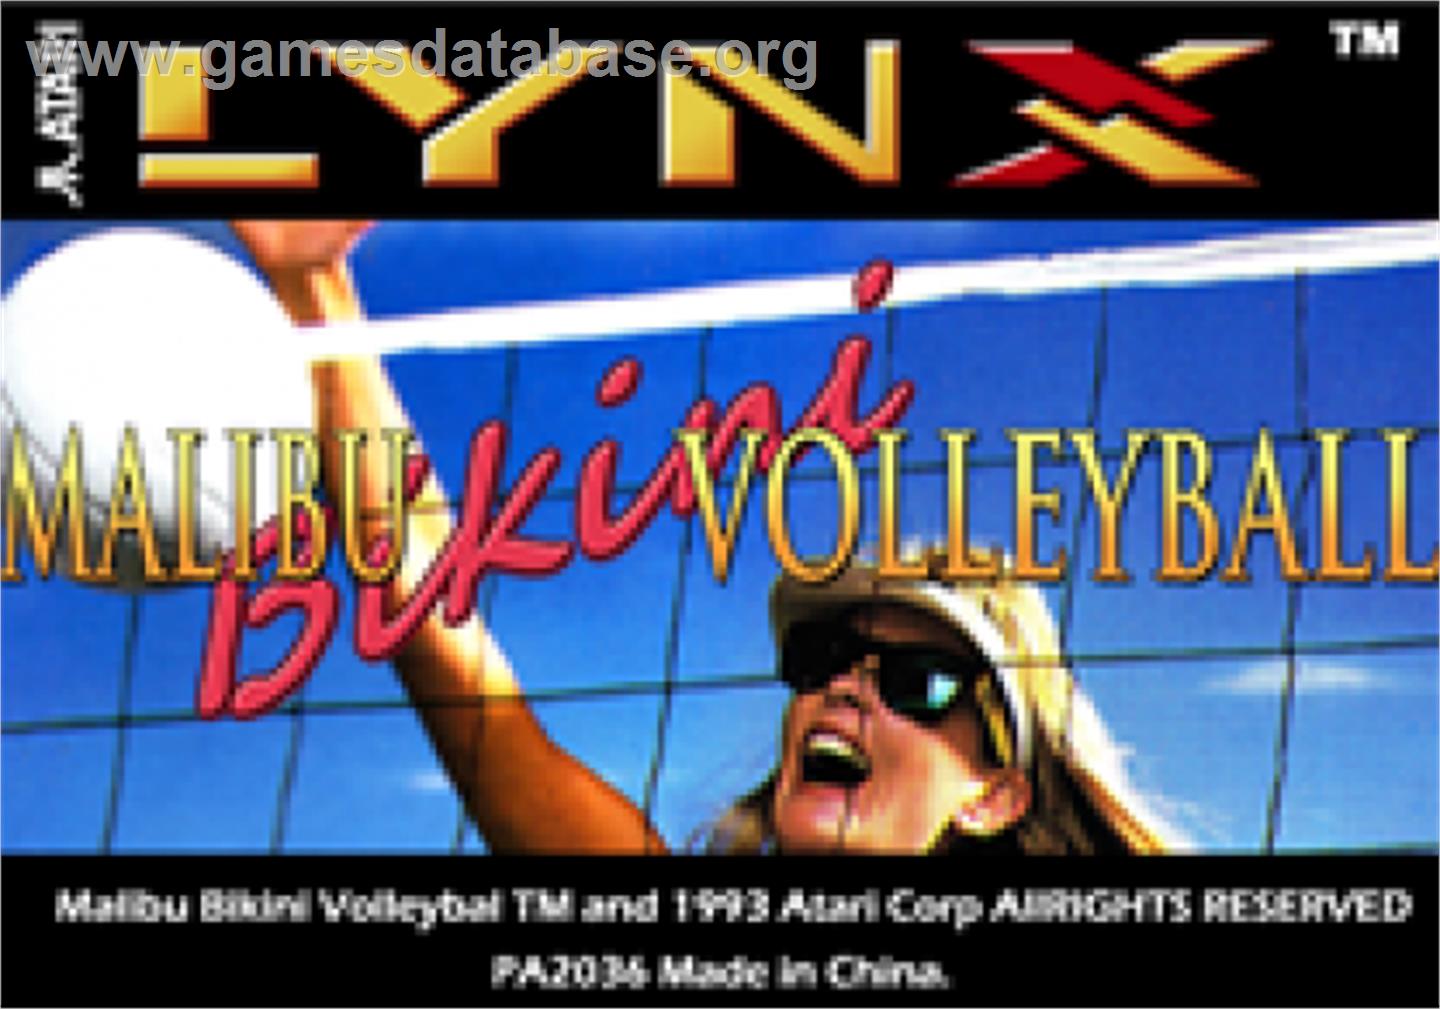 Malibu Bikini Volleyball - Atari Lynx - Artwork - Cartridge Top